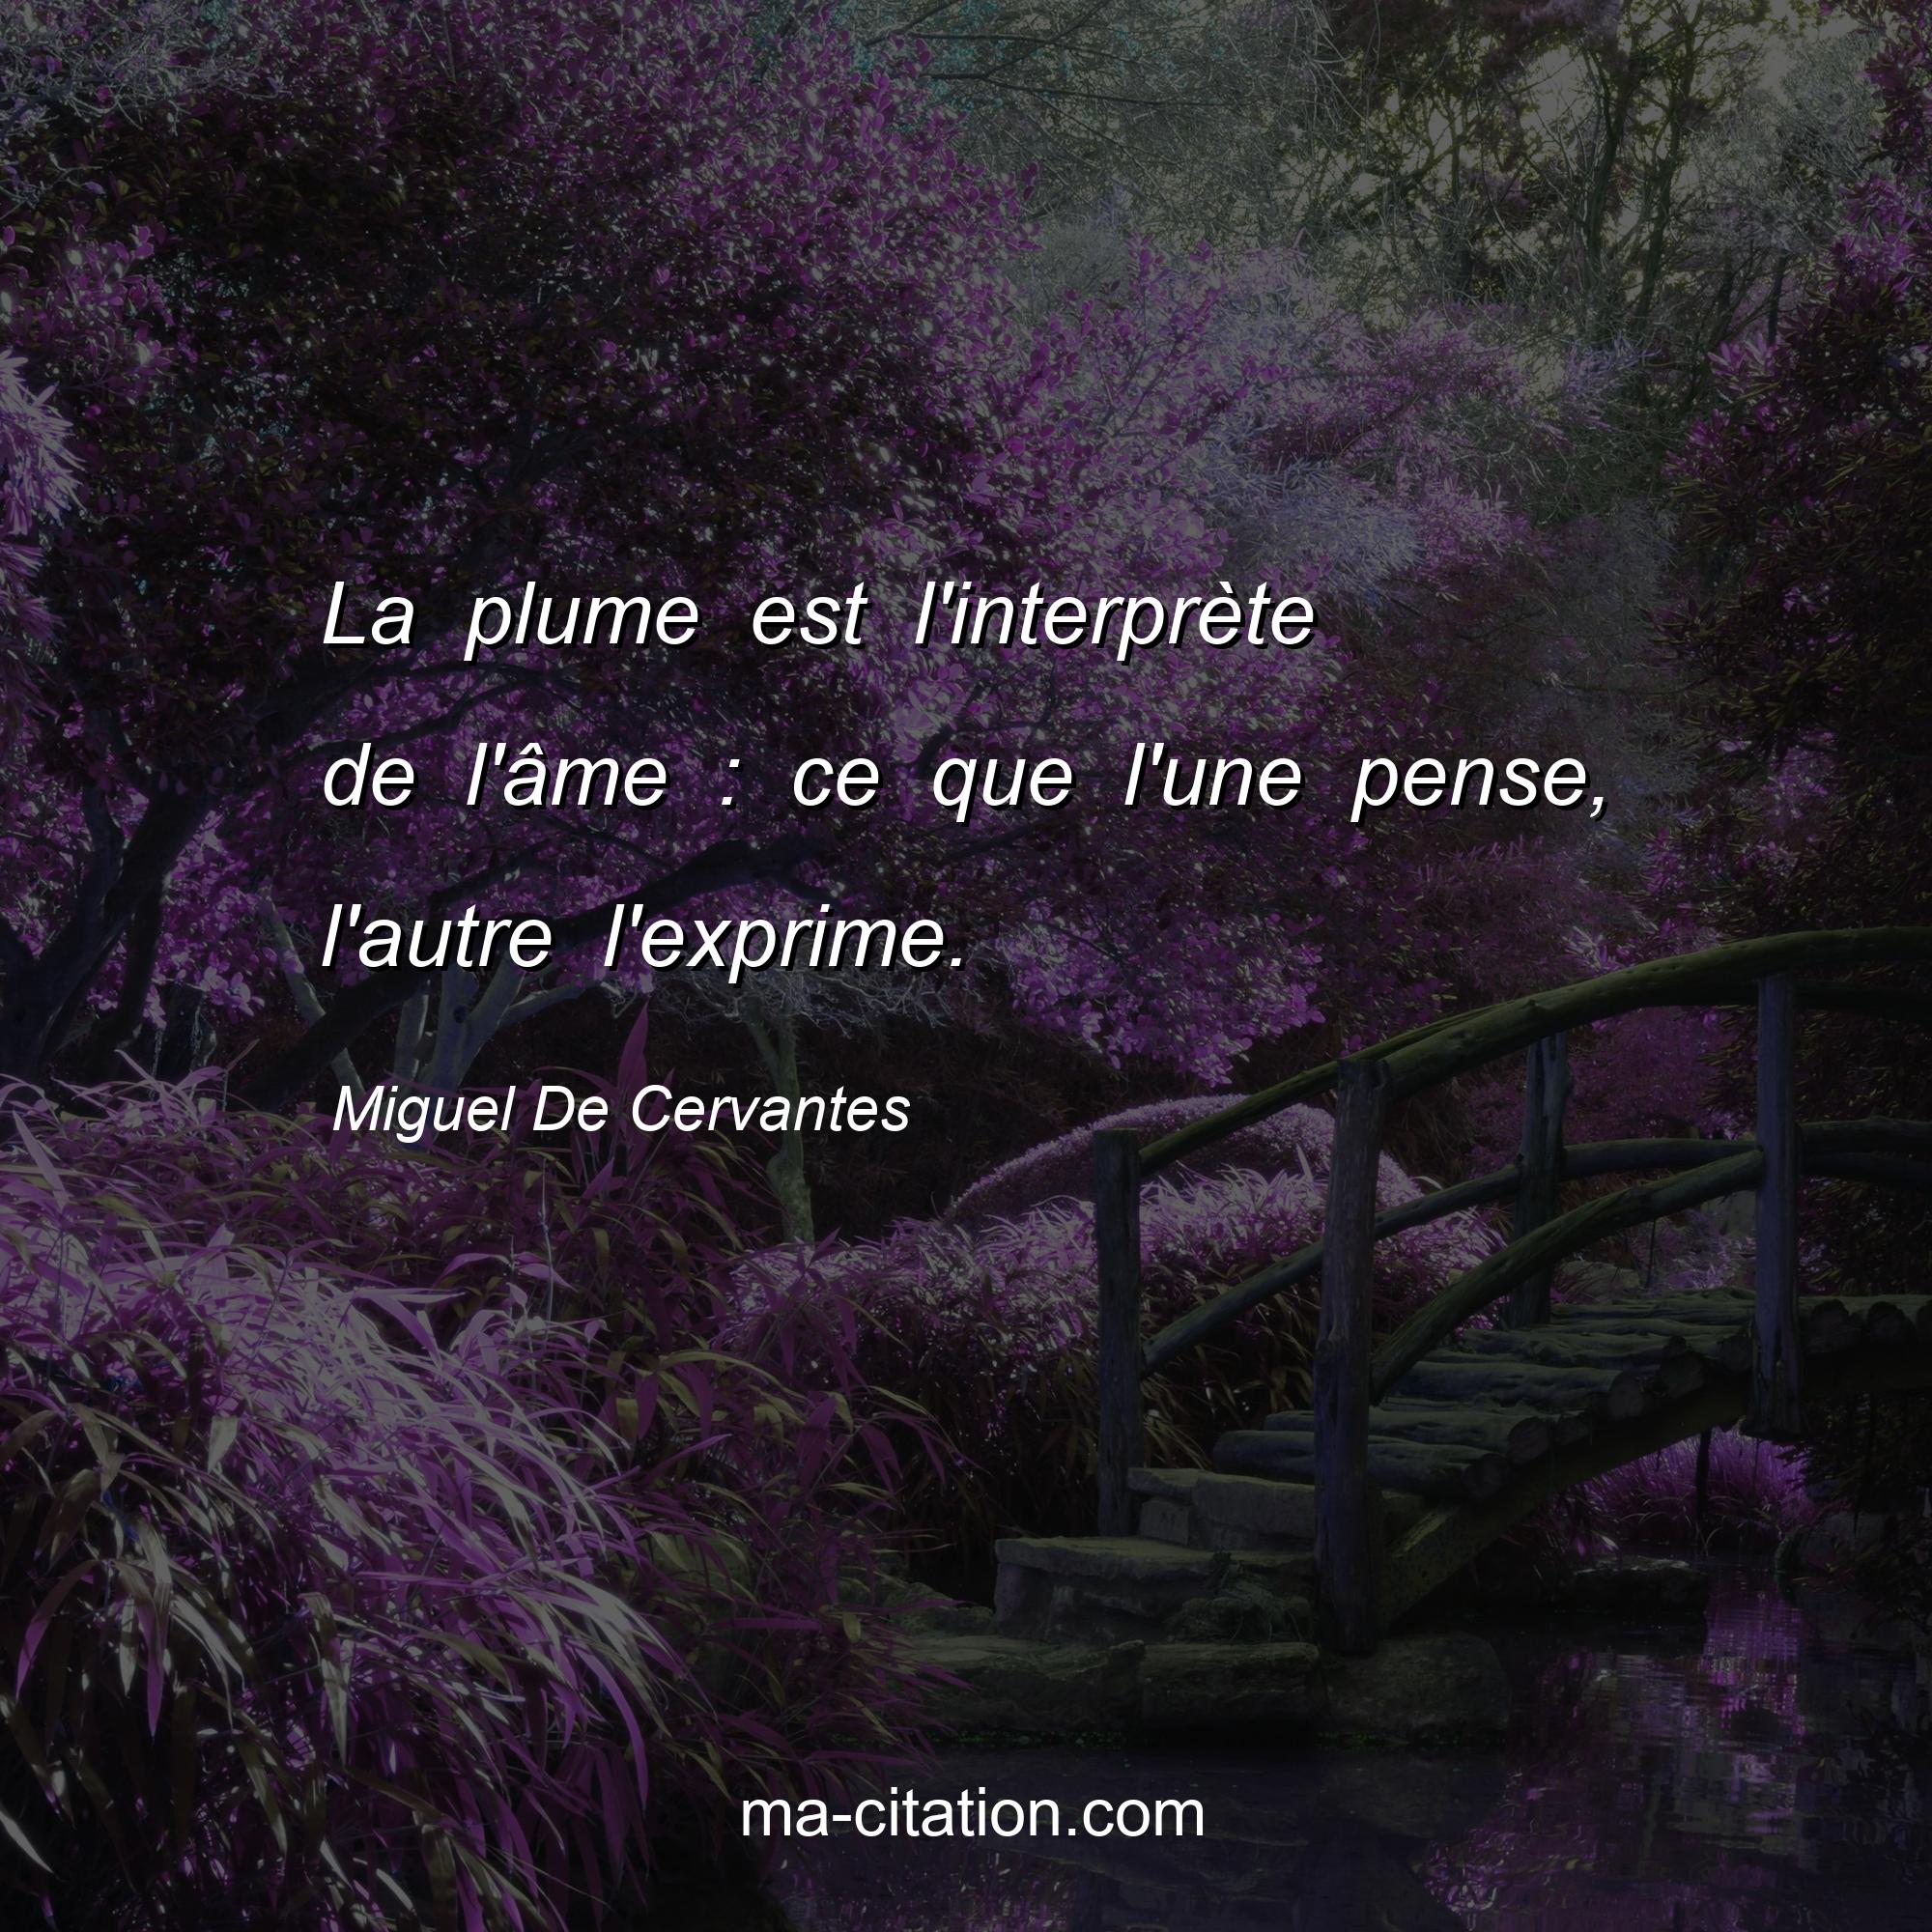 Miguel De Cervantes : La plume est l'interprète de l'âme : ce que l'une pense, l'autre l'exprime.